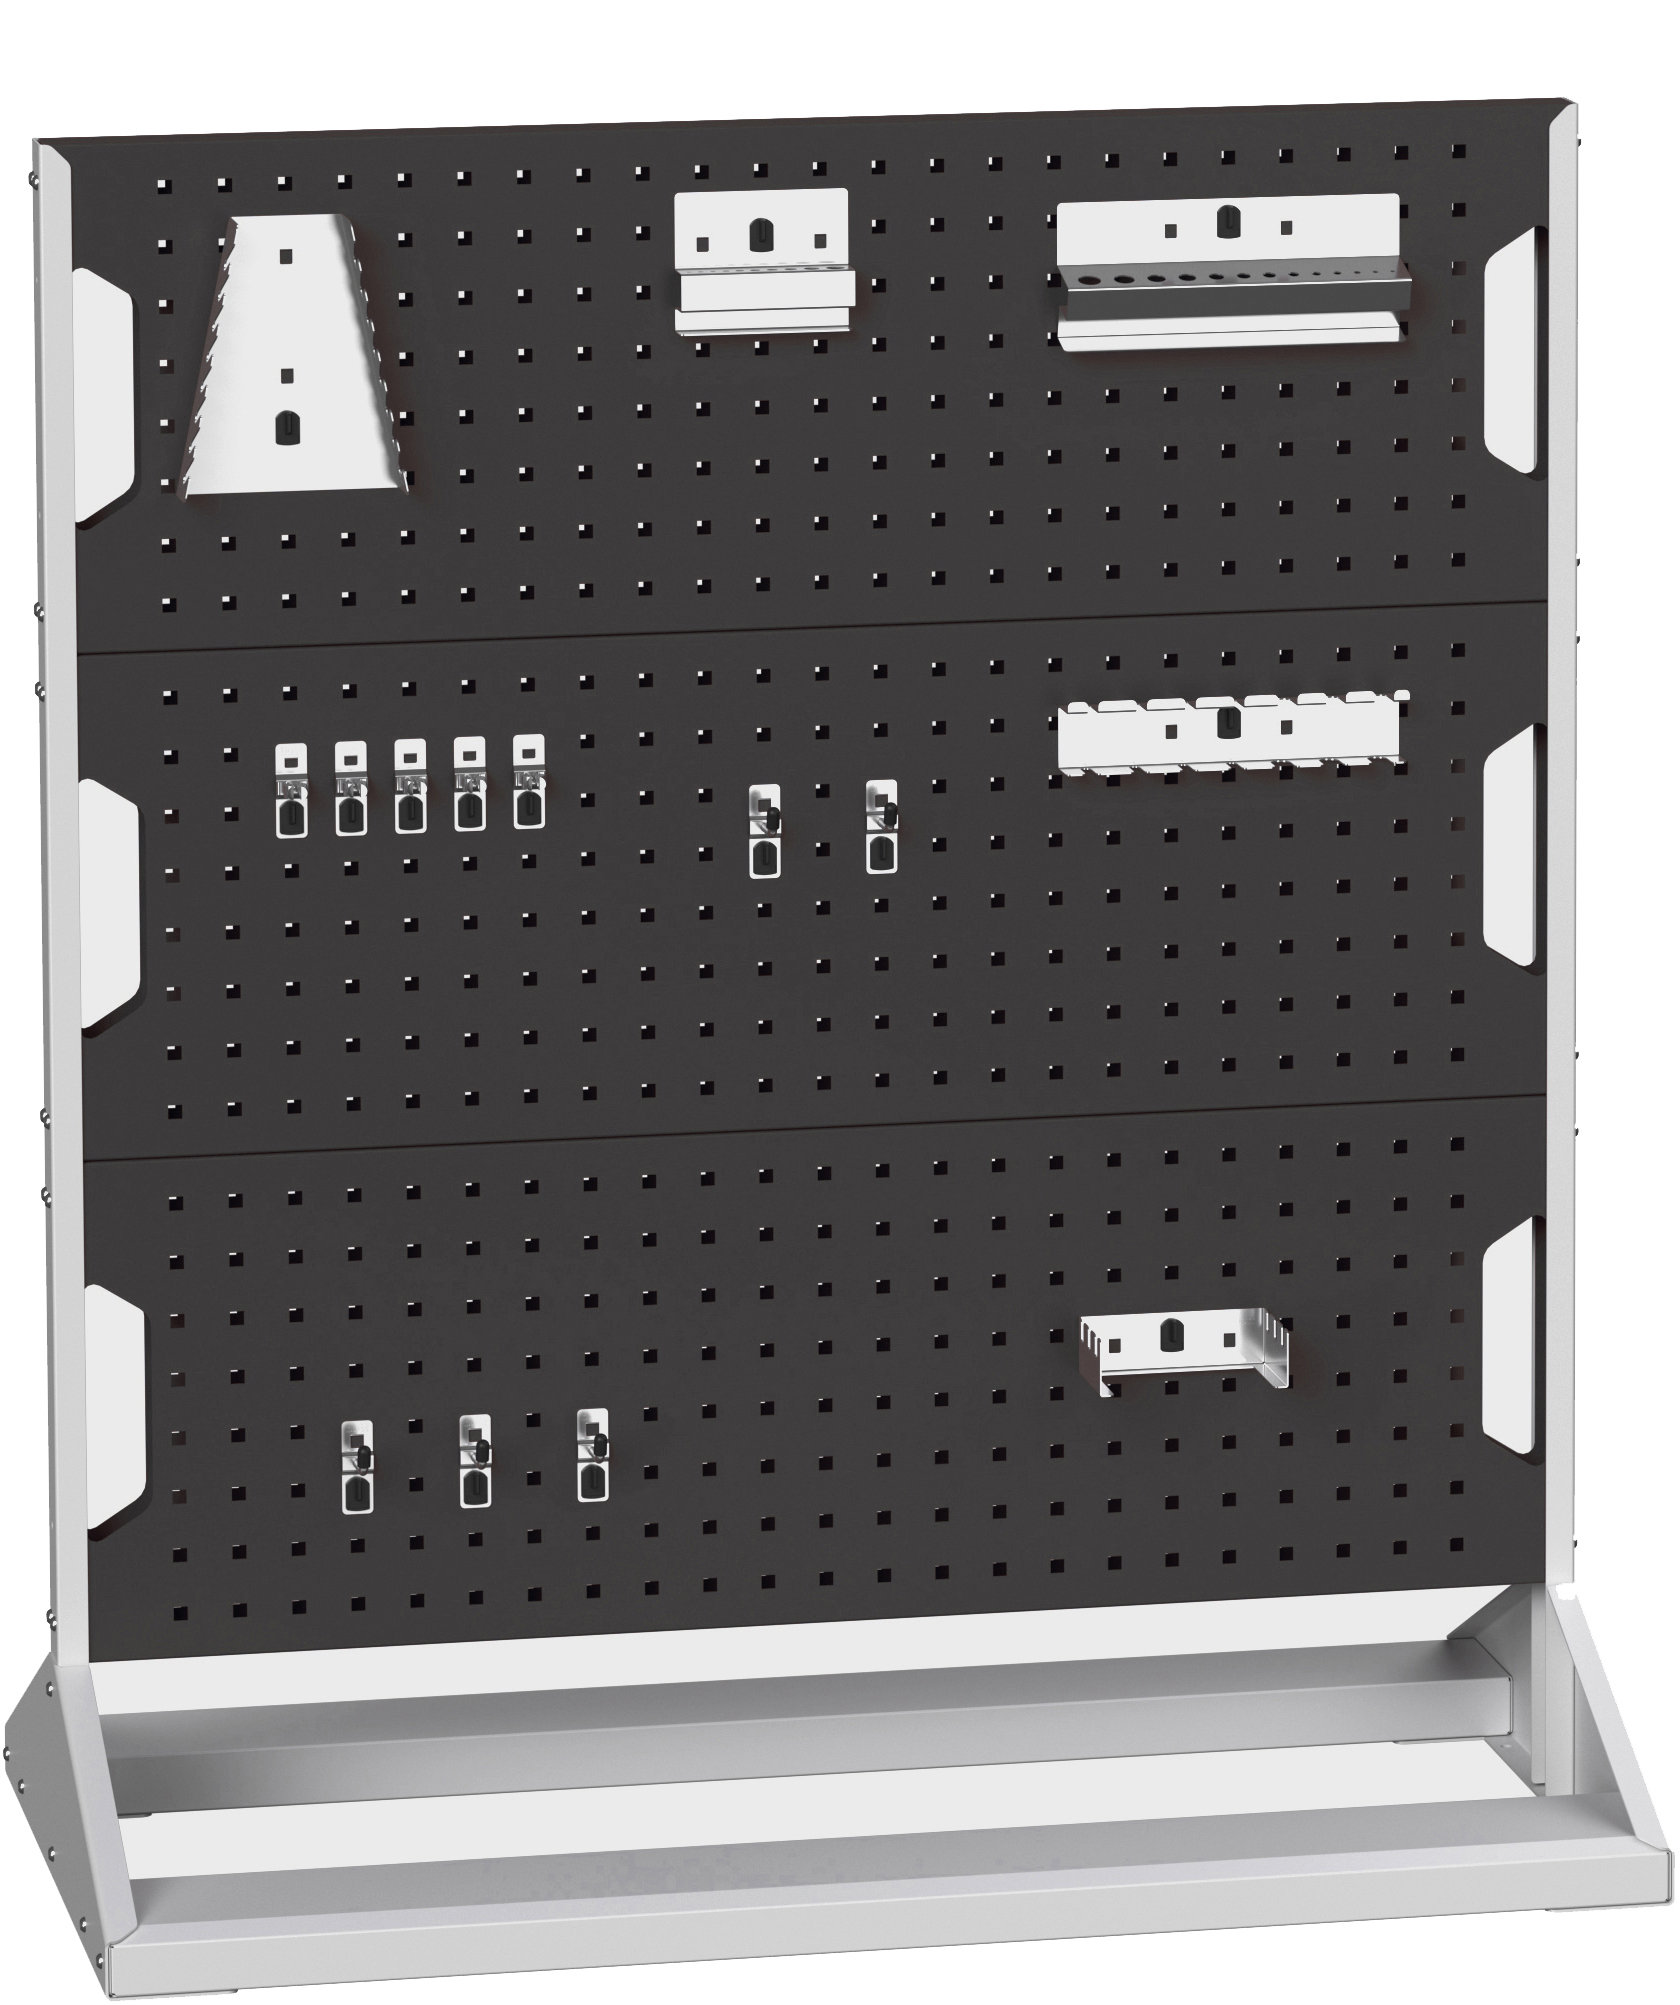 Bott Perfo Panel Rack (Double Sided) - 16917200.19V